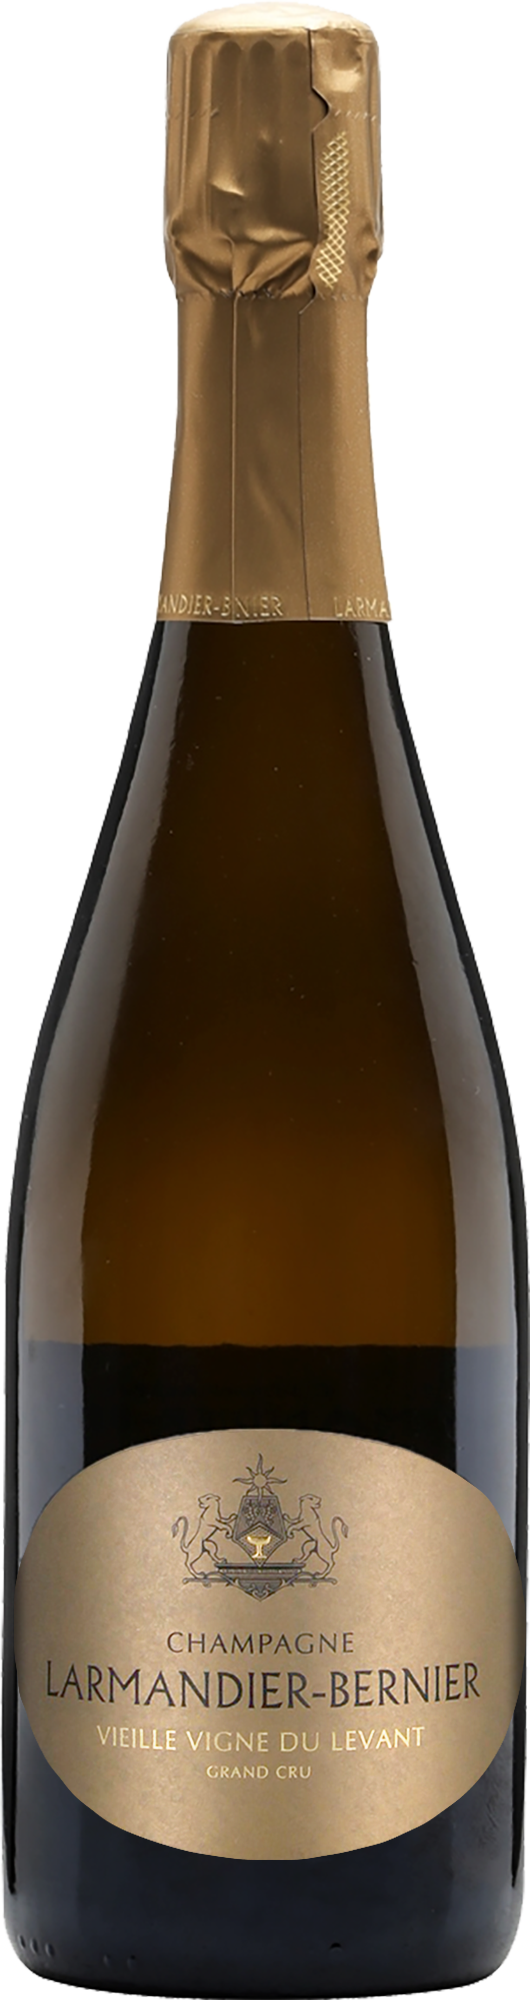 Champagne Larmandier-Bernier Grand Cru Vieille Vigne du Levant 2013 (Disg. Sep 22)